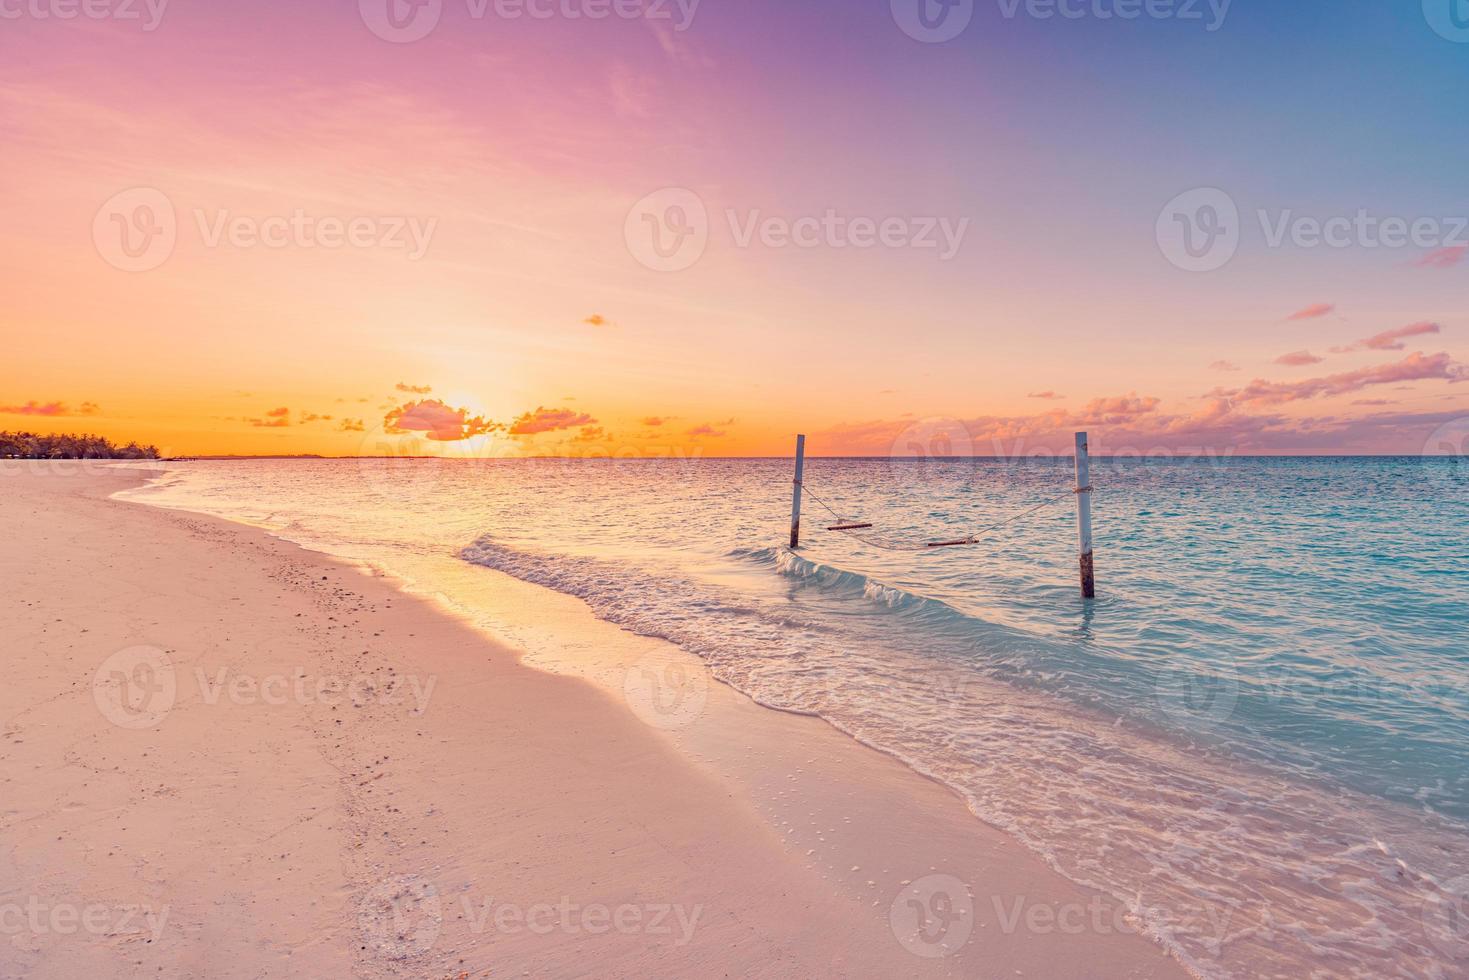 playa de puesta de sol tropical y fondo del cielo como paisaje exótico de verano con columpio de playa o hamaca y arena blanca y pancarta de playa de mar tranquilo. isla paraíso vacaciones en la playa o destino de vacaciones de verano foto